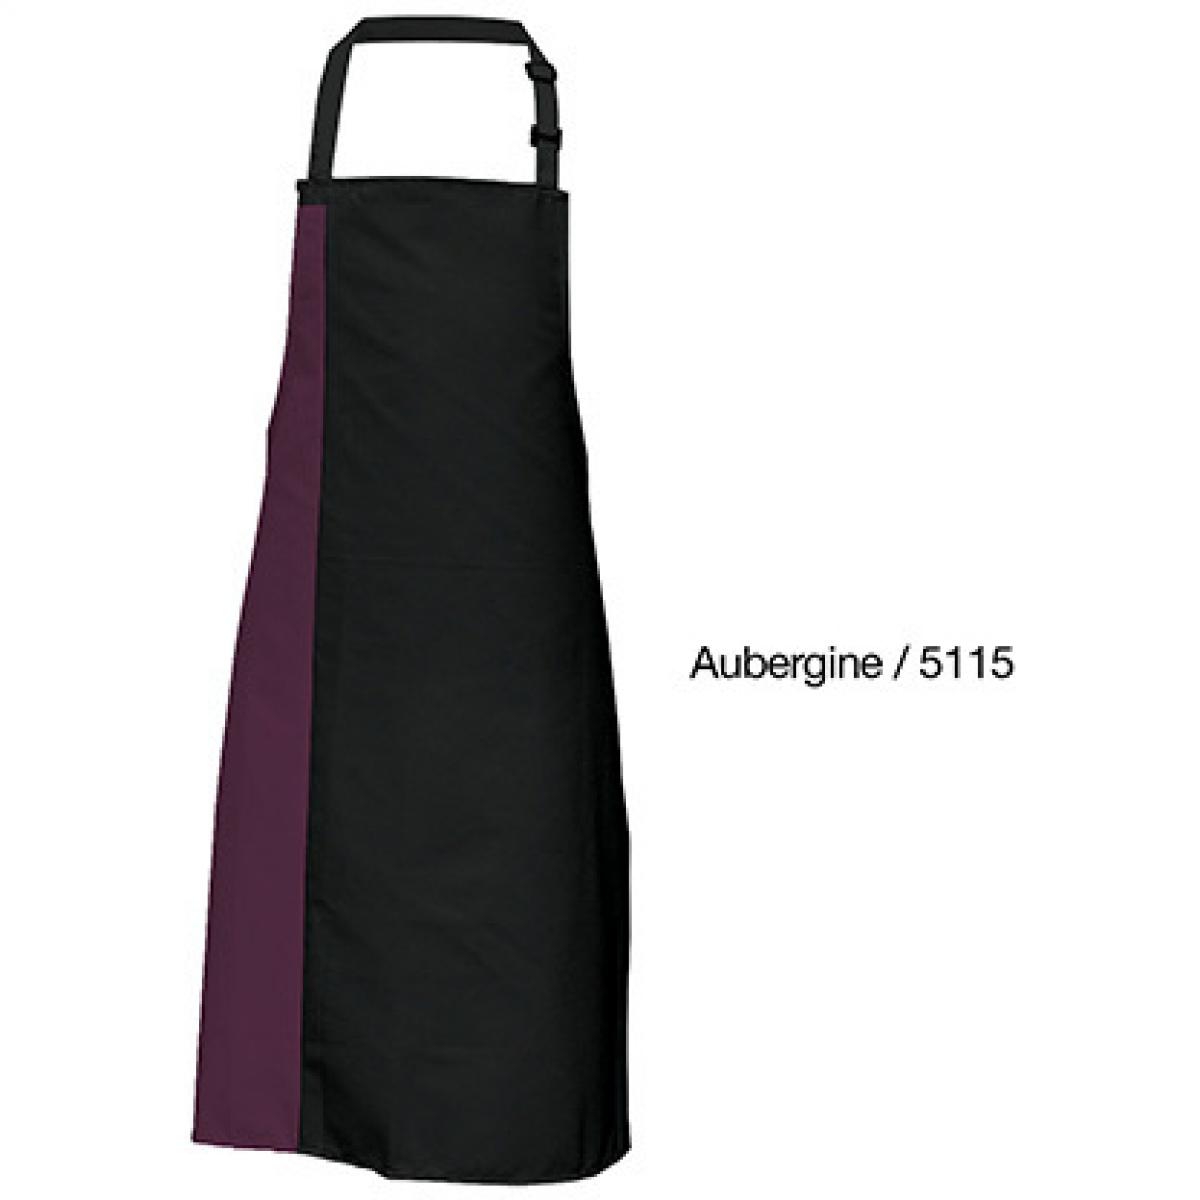 Hersteller: Link Kitchen Wear Herstellernummer: DS8572 Artikelbezeichnung: Duo Apron - 72 x 85 cm - Waschbar bis 60 °C Farbe: Black/Aubergine (ca. Pantone 5115)